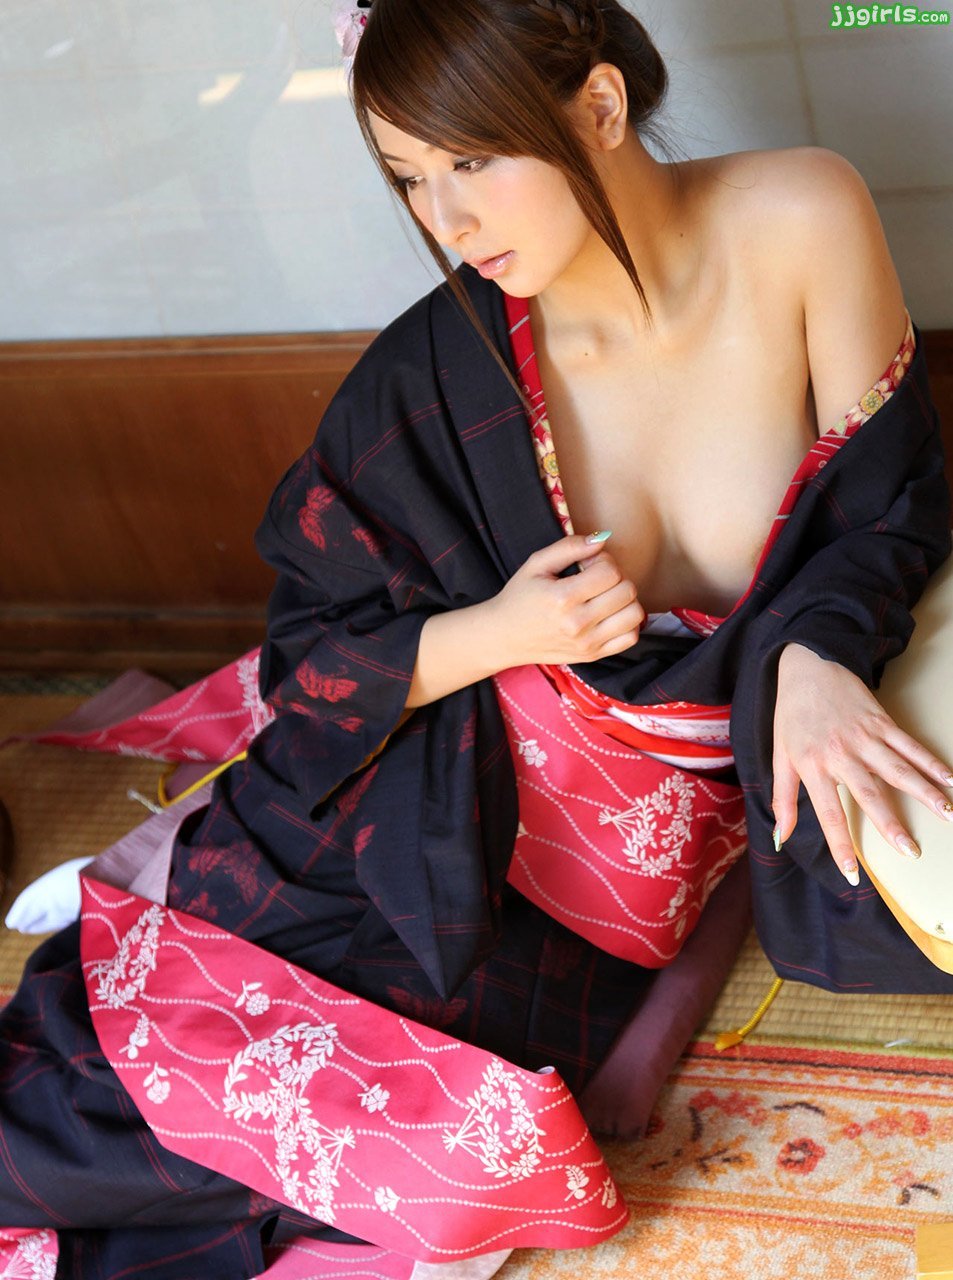 коллекция японской эротики фото 57